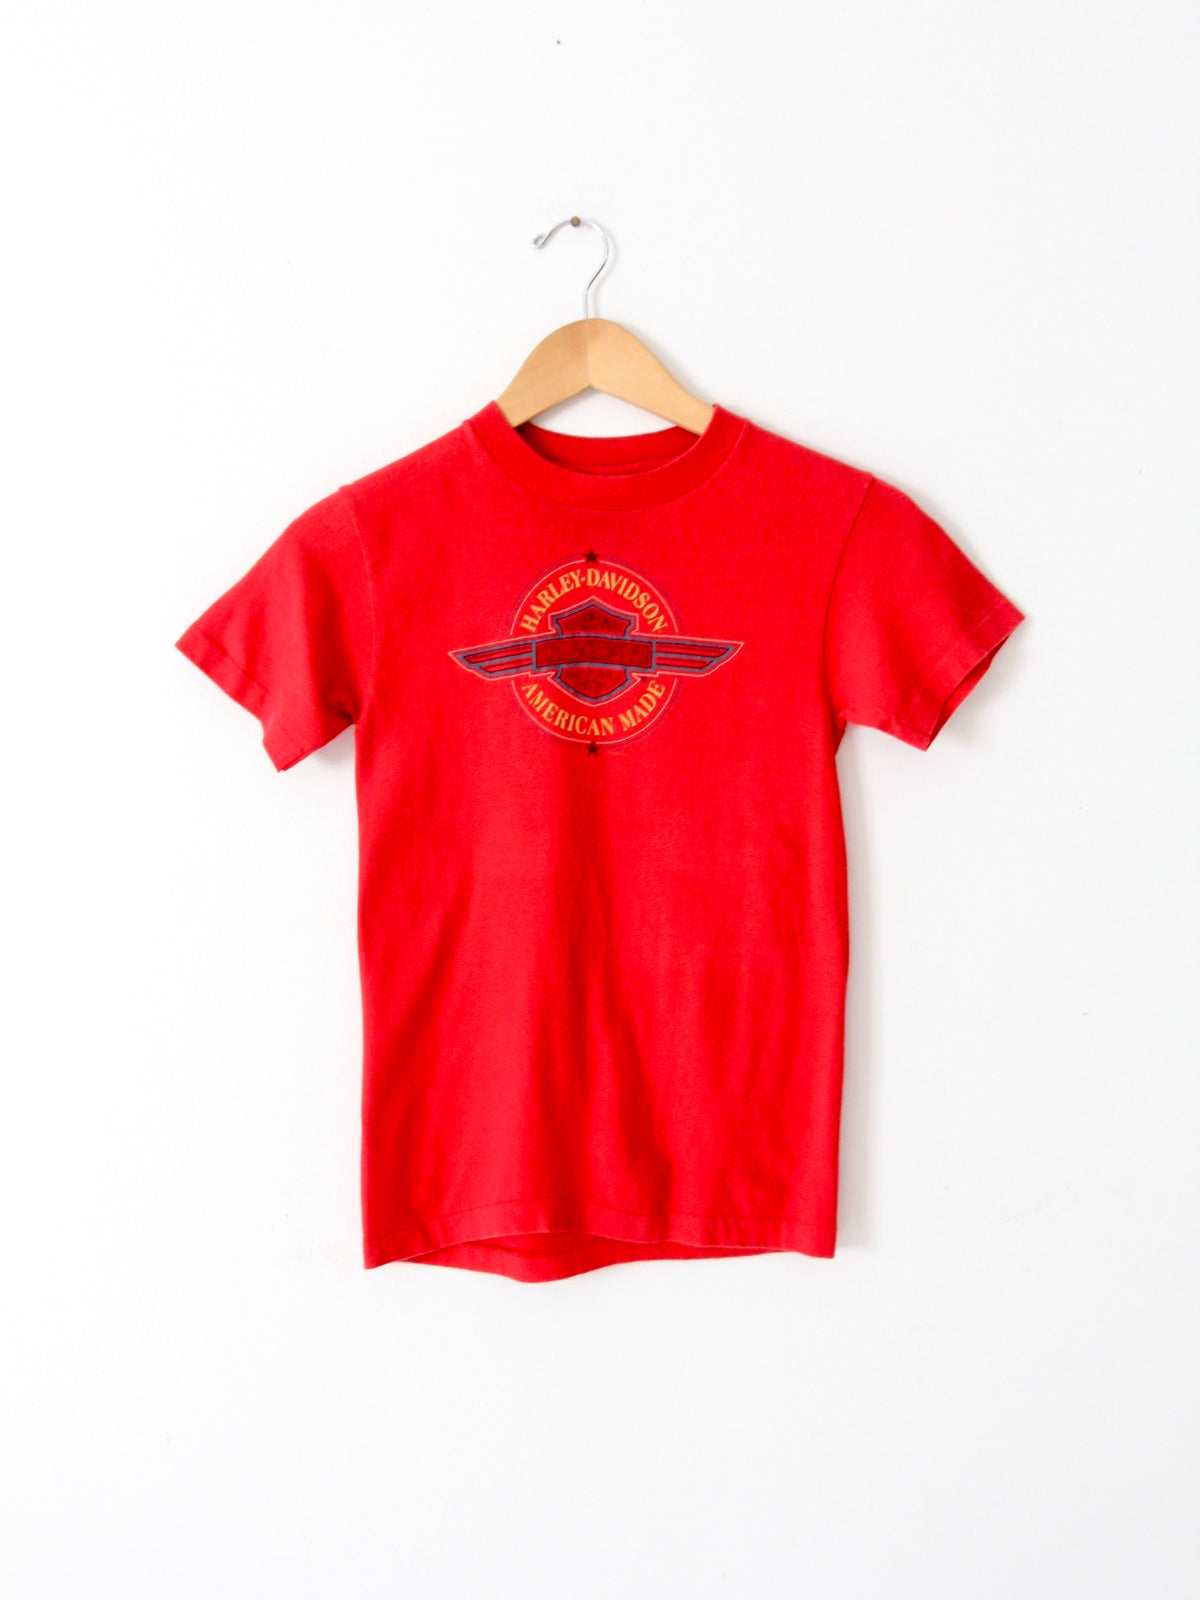 vintage Harley Davidson red t-shirt